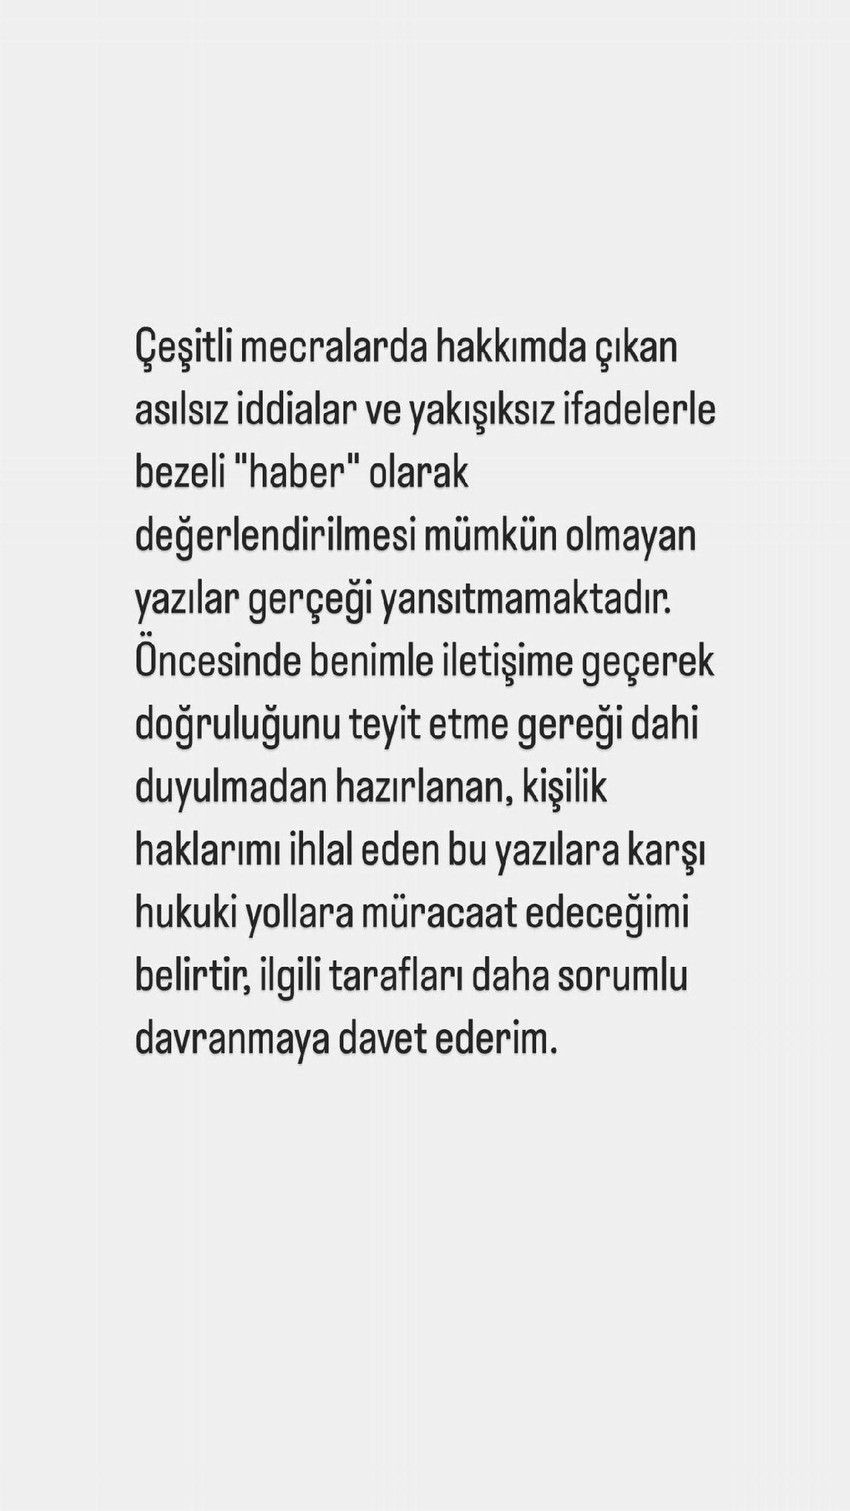 Oyuncu Kaan Urgancıoğlu evlenmeden önce kullandığı, düşük kira ödediği evi daha yüksek bir fiyattan başkasına kiraya verdiği iddiasına yanıt verdi.